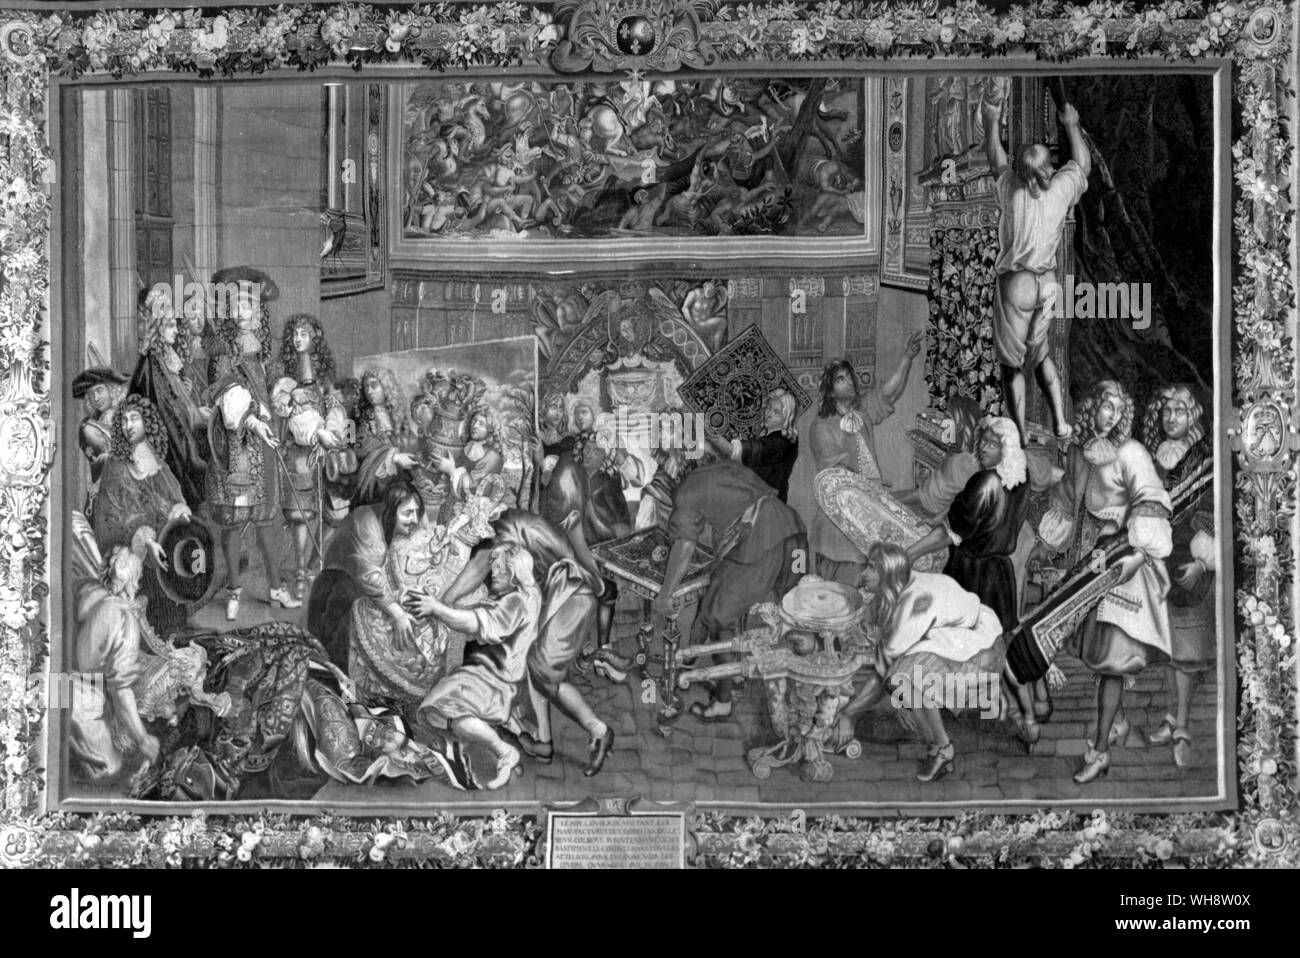 Louis XIV chiamato il Re Sole 1638-1715 Re di Francia dal 1643 visitando la manifattura di Gobelins 15 ottobre 1667, arazzo dopo Charles Le Brun. Le Brun è presentare gli artigiani al re Foto Stock